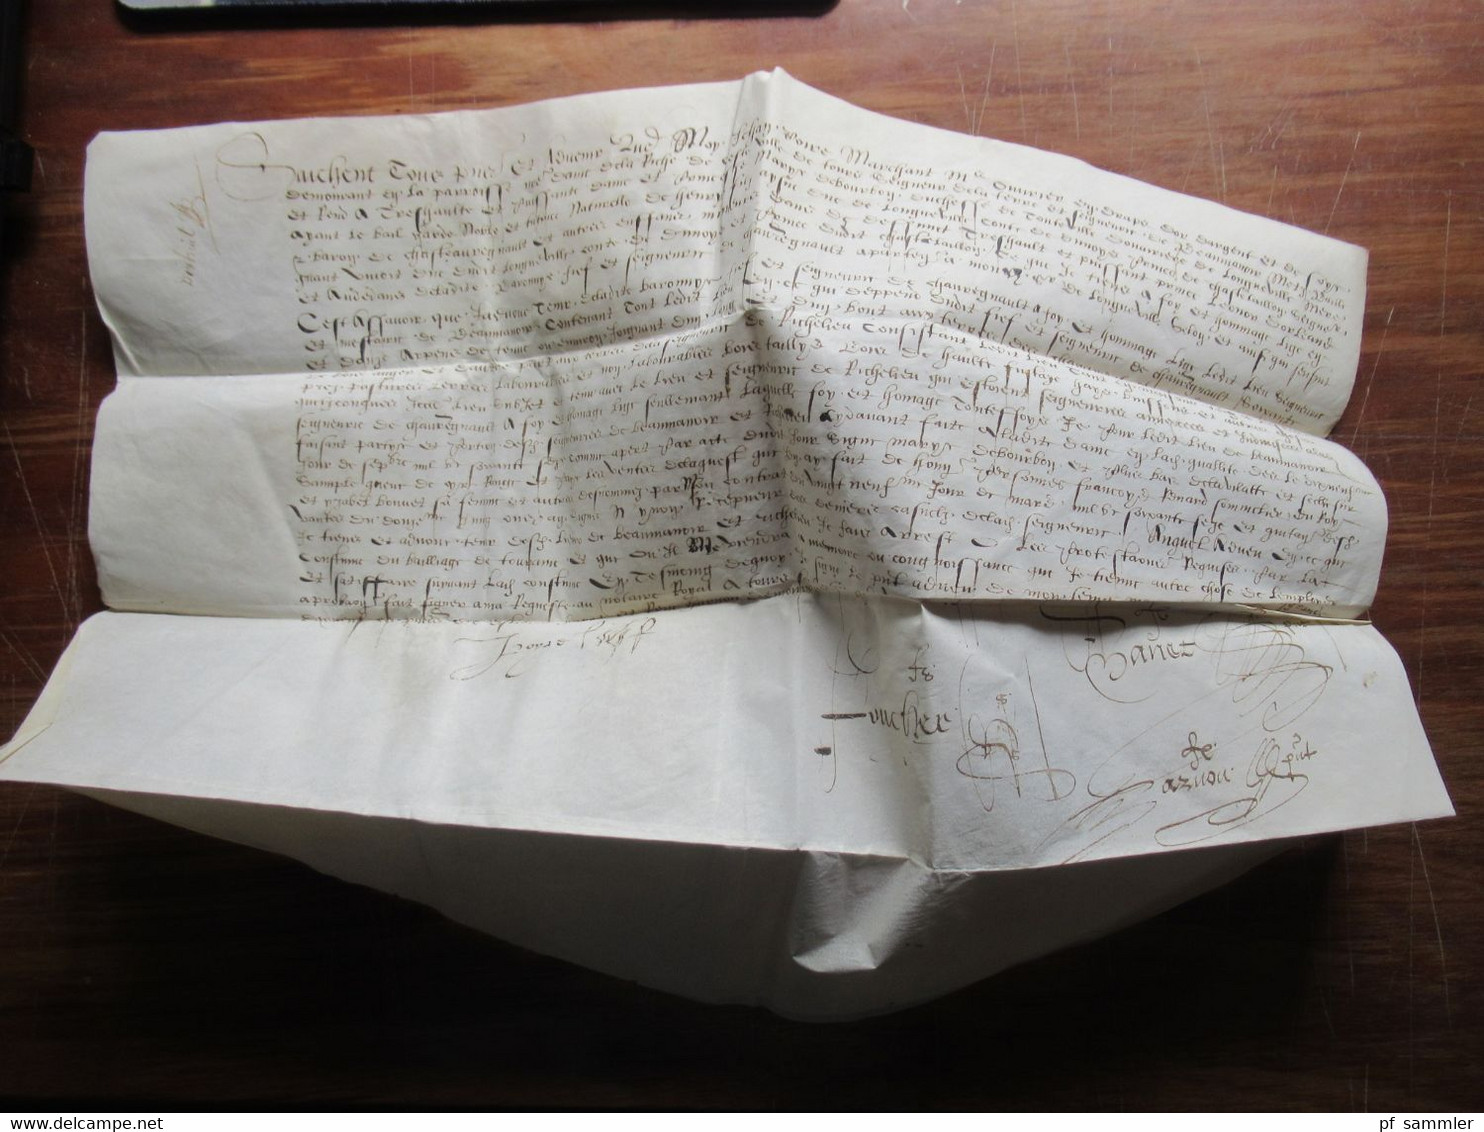 Frankreich Brief / Dokument aus dem Jahr 1579 / 16. Jahrhundert Faltbrief mit Inhalt und einigen Unterschriften! RRR